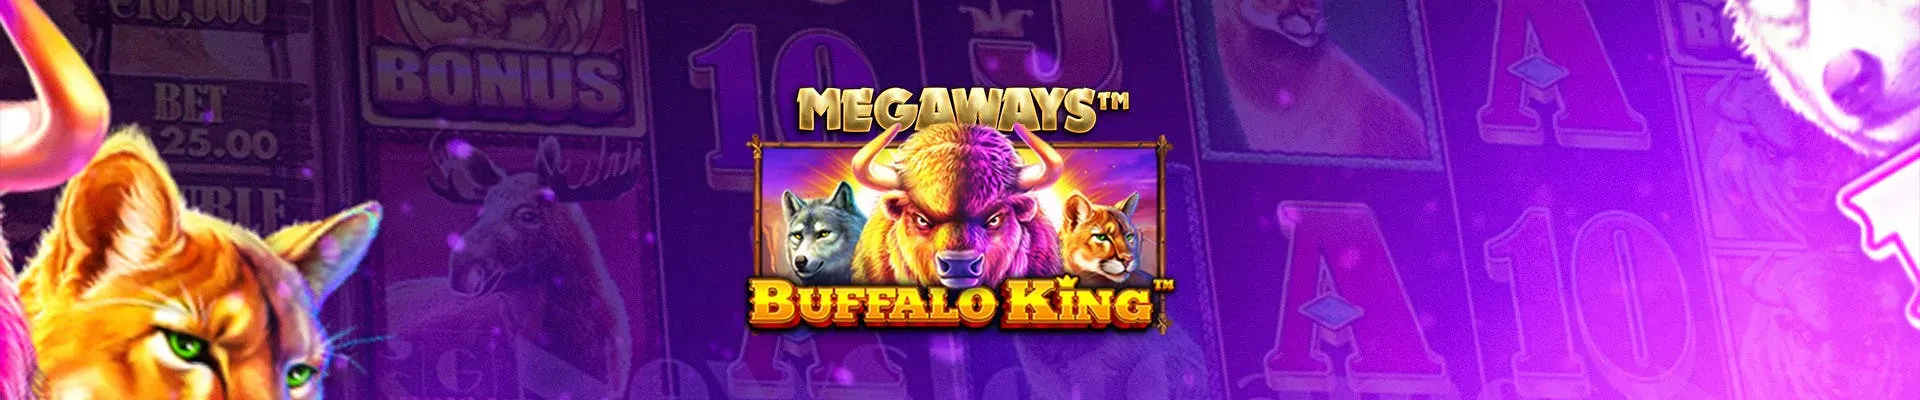 header buffalo king megaways